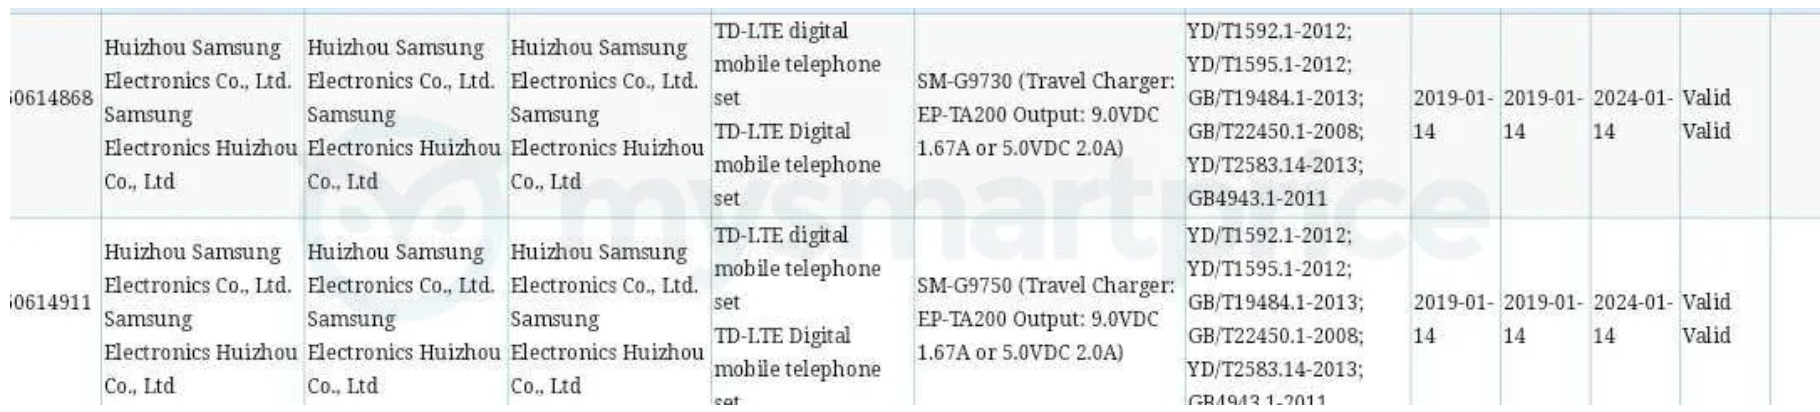 Samsung Galaxy S10 dan S10 Plus mendapatkan sertifikasi 3C mereka 2